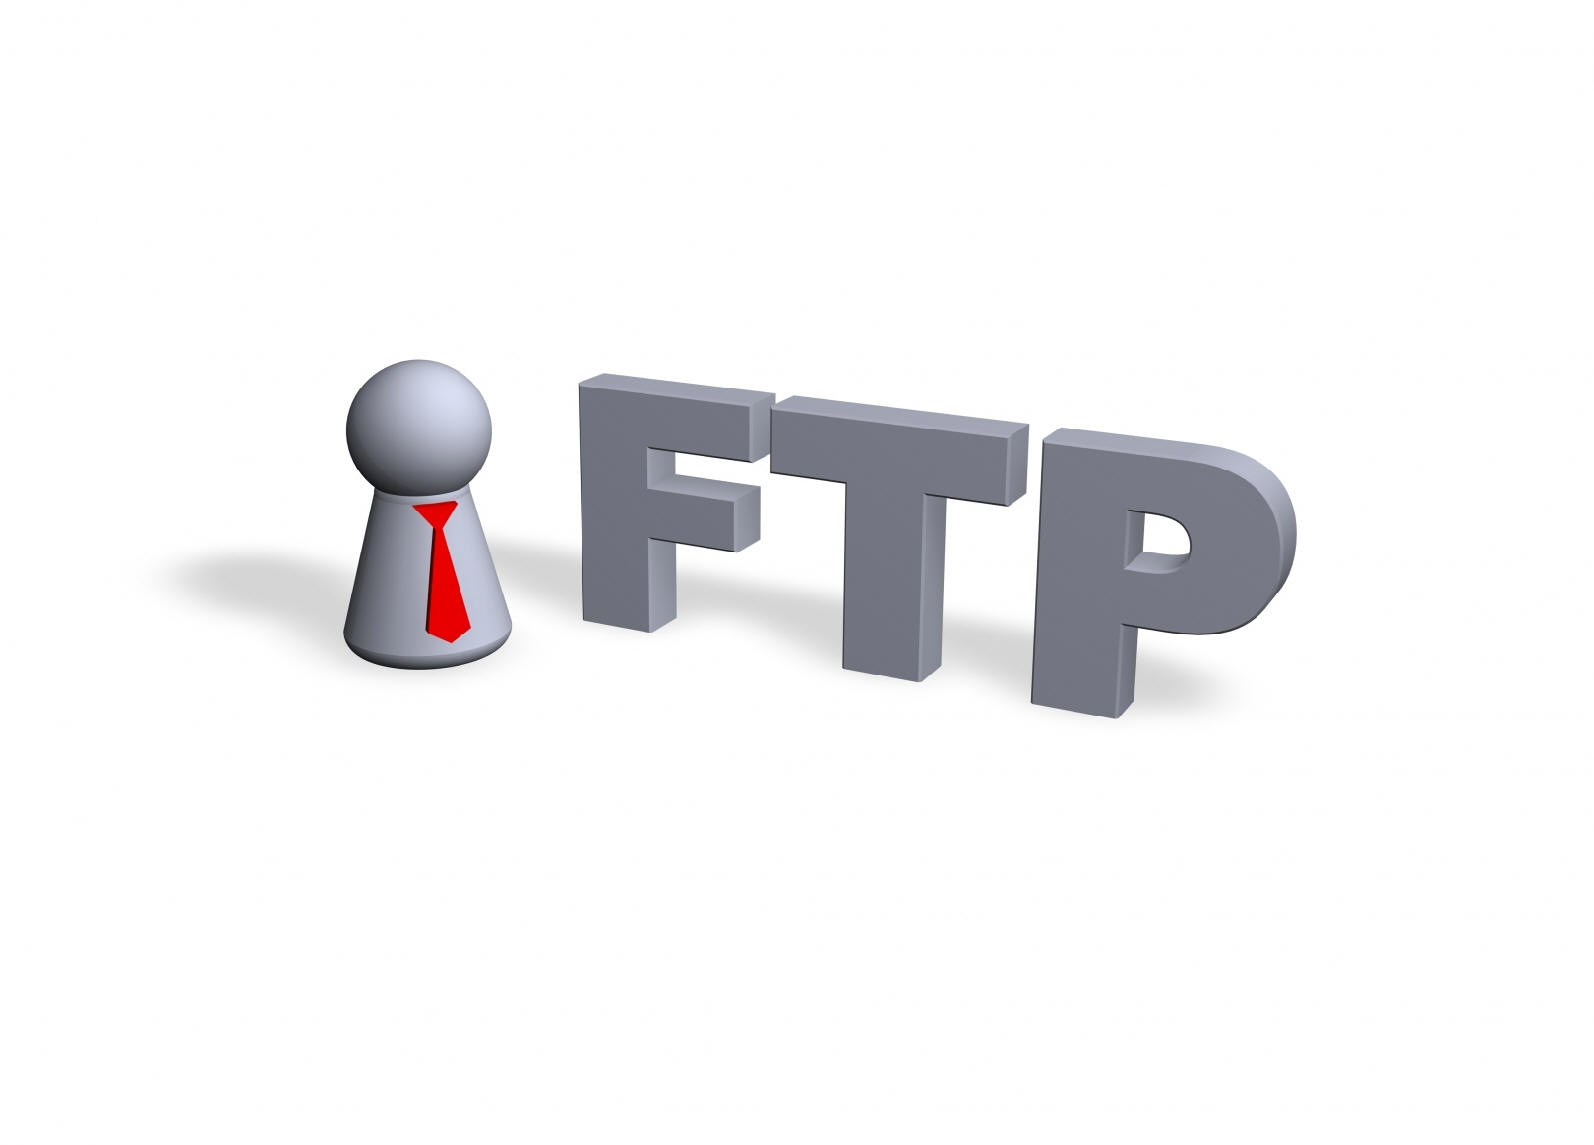 Http - //3 - Bp - Blogspot - Com/-1dj - Ftp Server , HD Wallpaper & Backgrounds